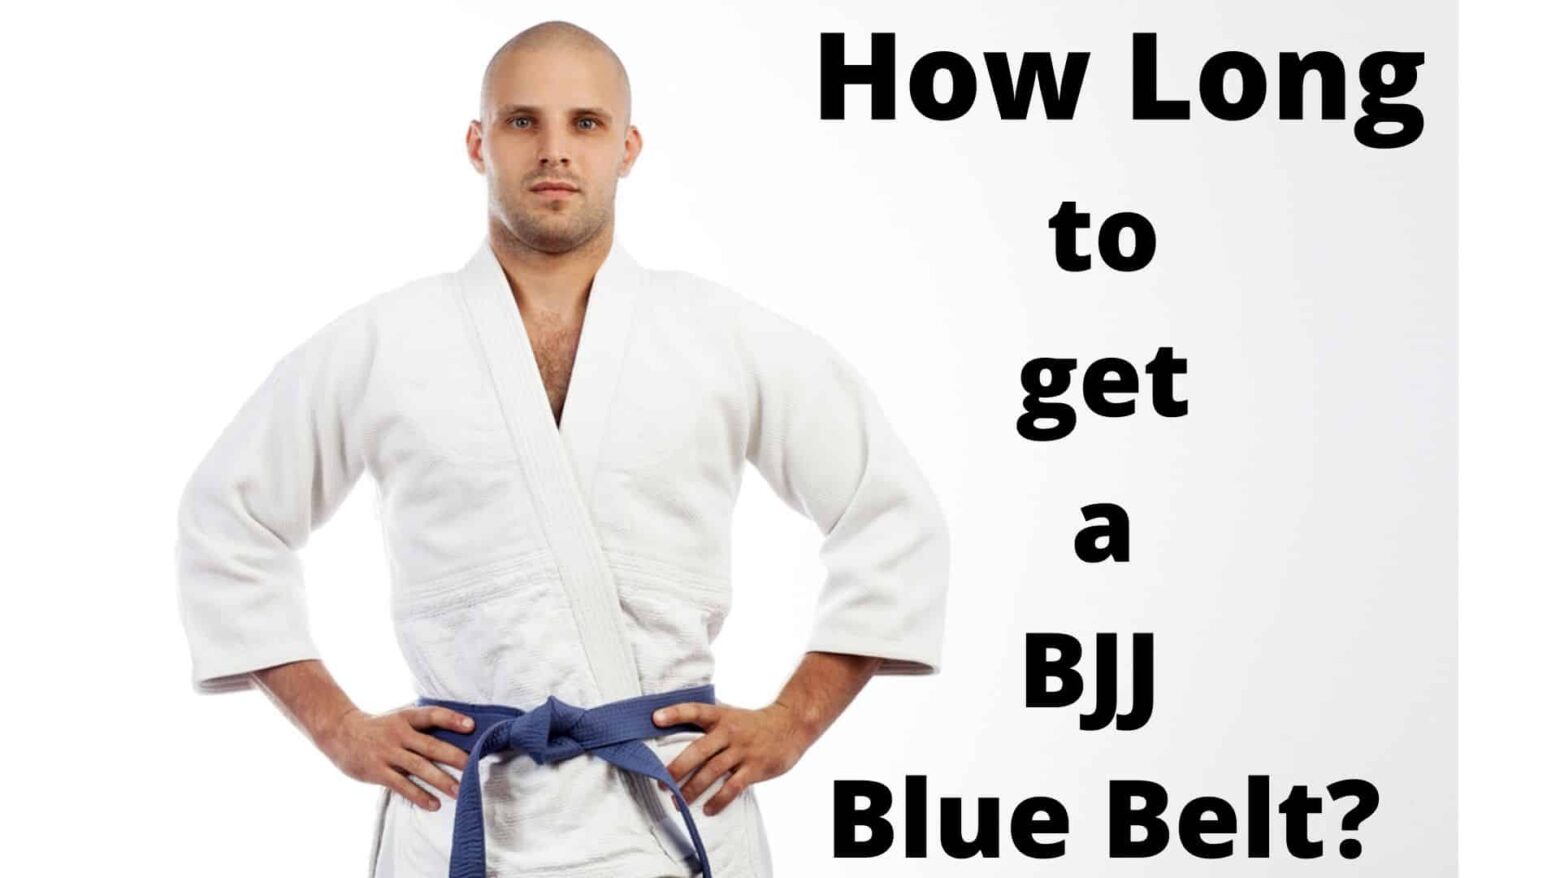 How Long to Get a BJJ Blue Belt?